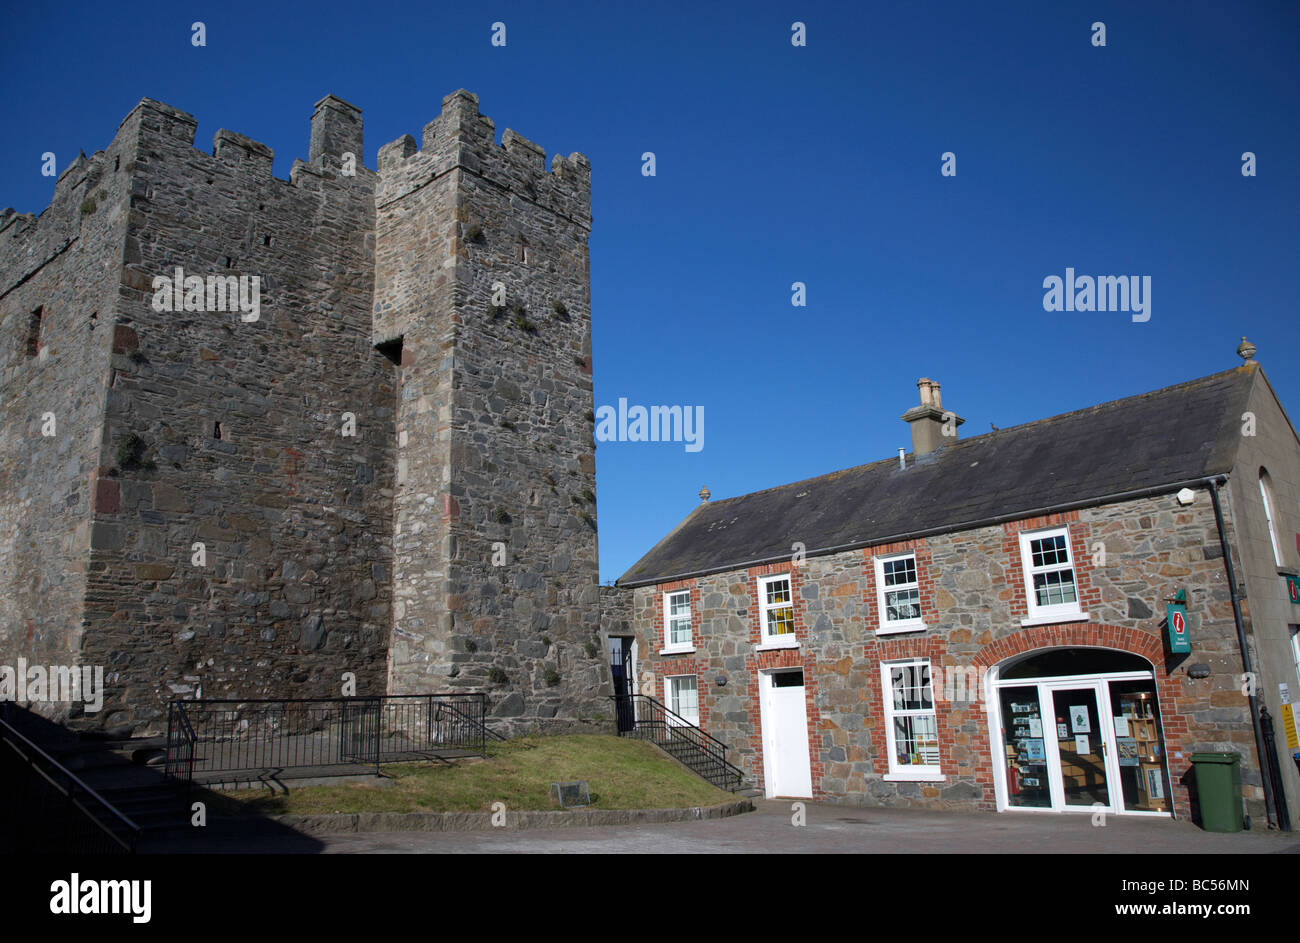 Ollon et centre d'informations touristiques County Down Irlande du Nord uk Banque D'Images